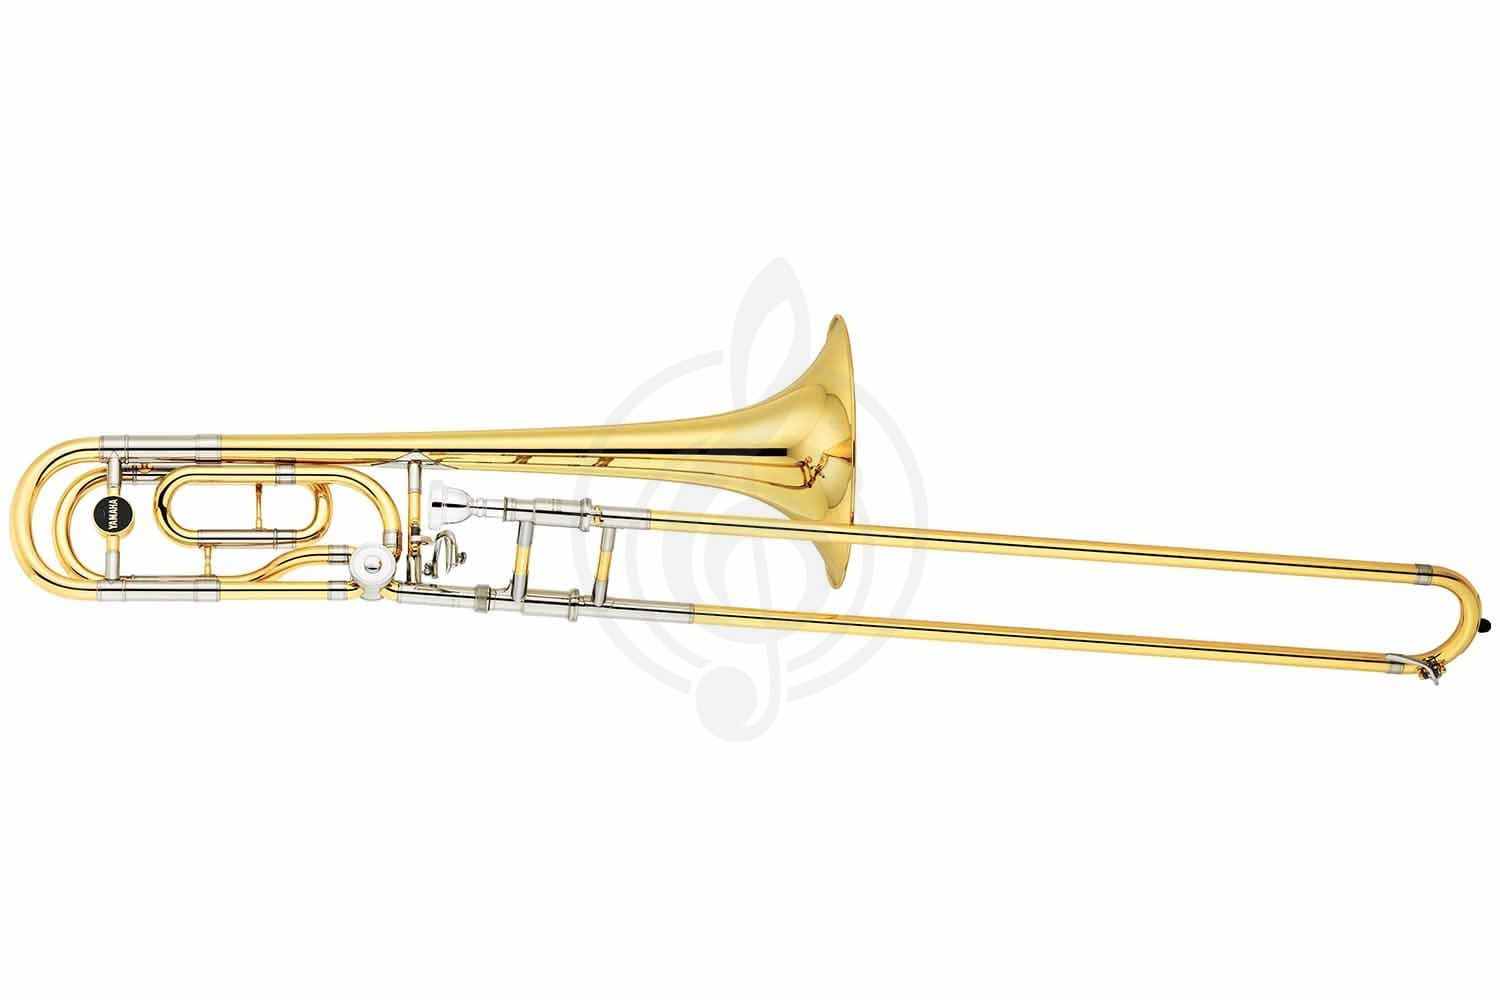 Тромбон Тромбоны Yamaha Yamaha YSL-882GOR - Bb/ F тромбон тенор профессиональный, 13,89/220мм, Gold-brass раструб YSL-882GOR//02 - фото 1